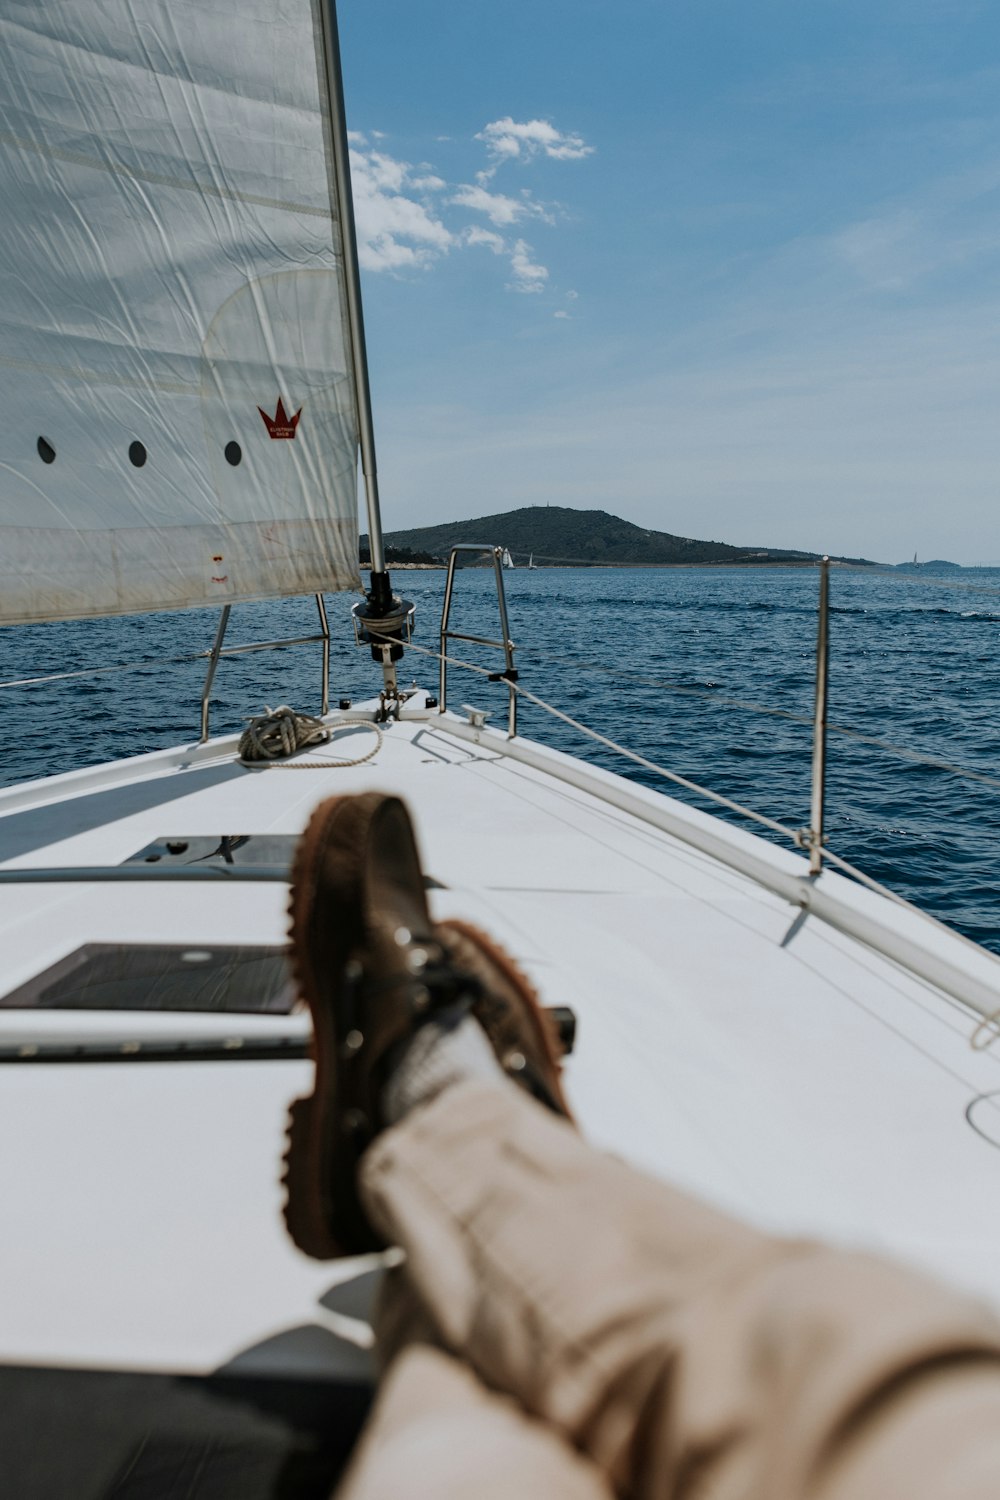 I piedi di una persona su una barca a vela nell'acqua